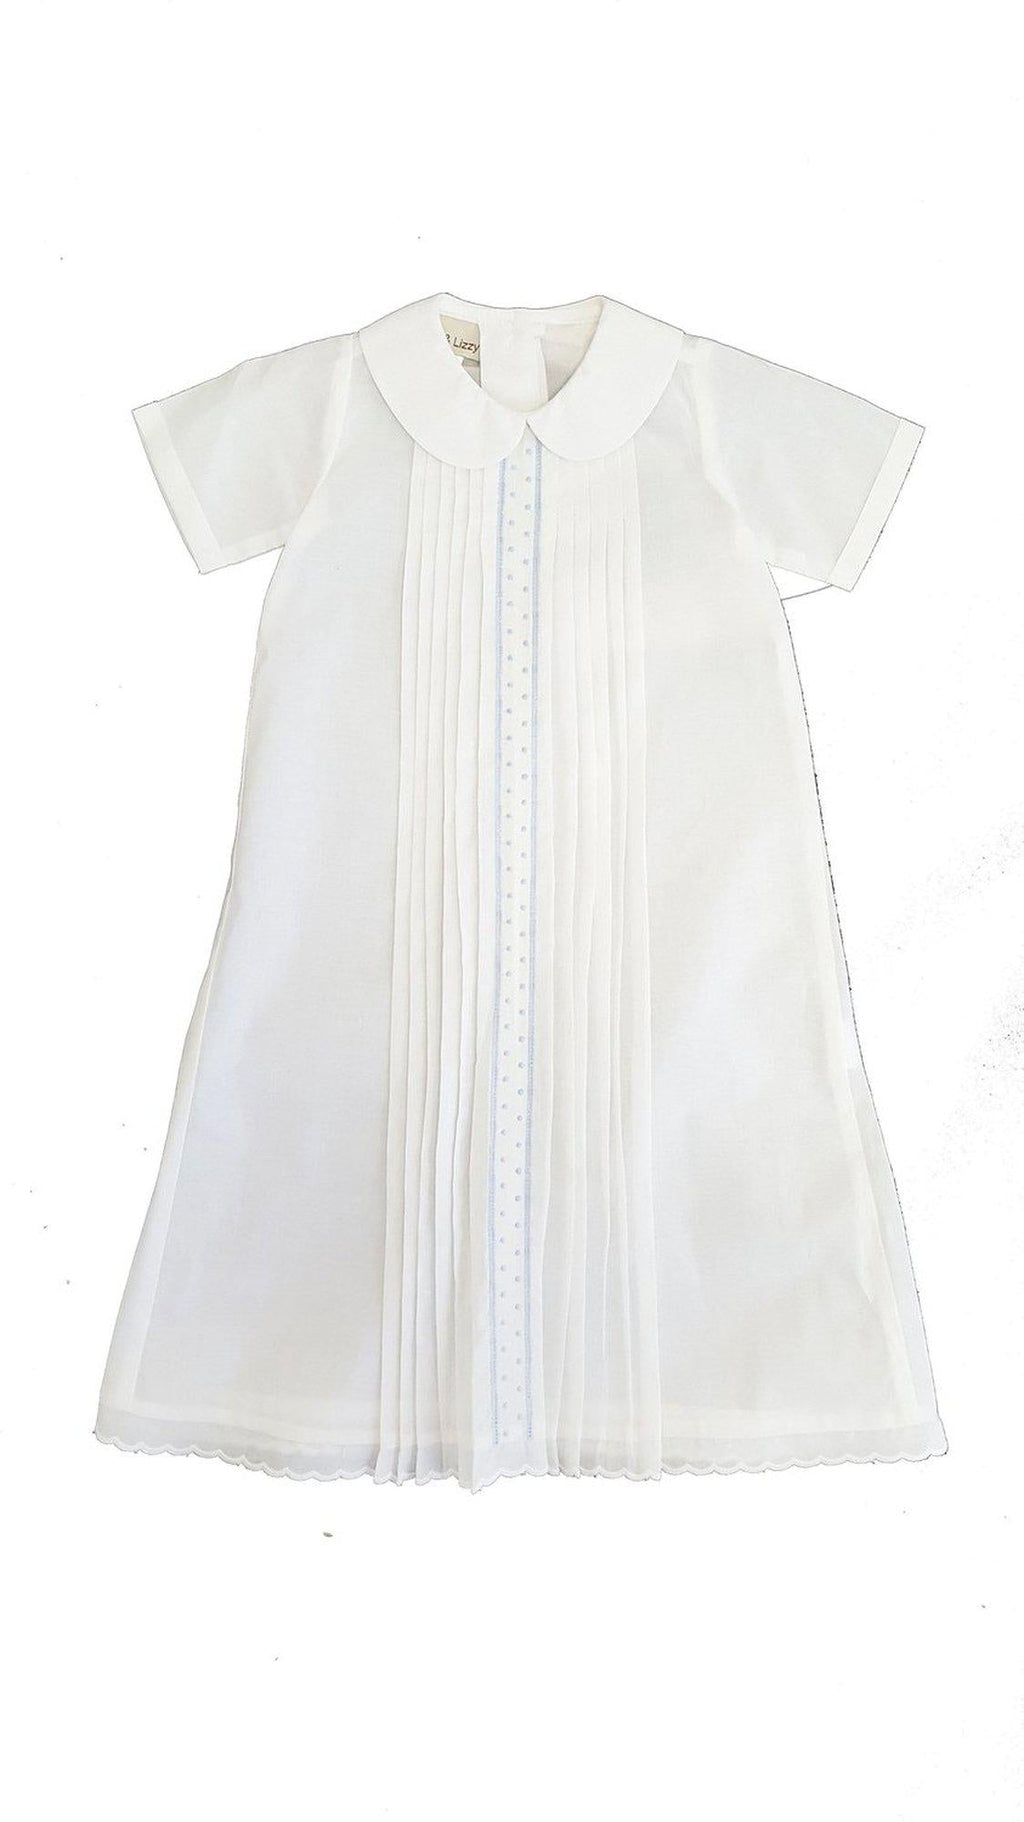 White Boy's Daygown - Little Threads Inc. Children's Clothing